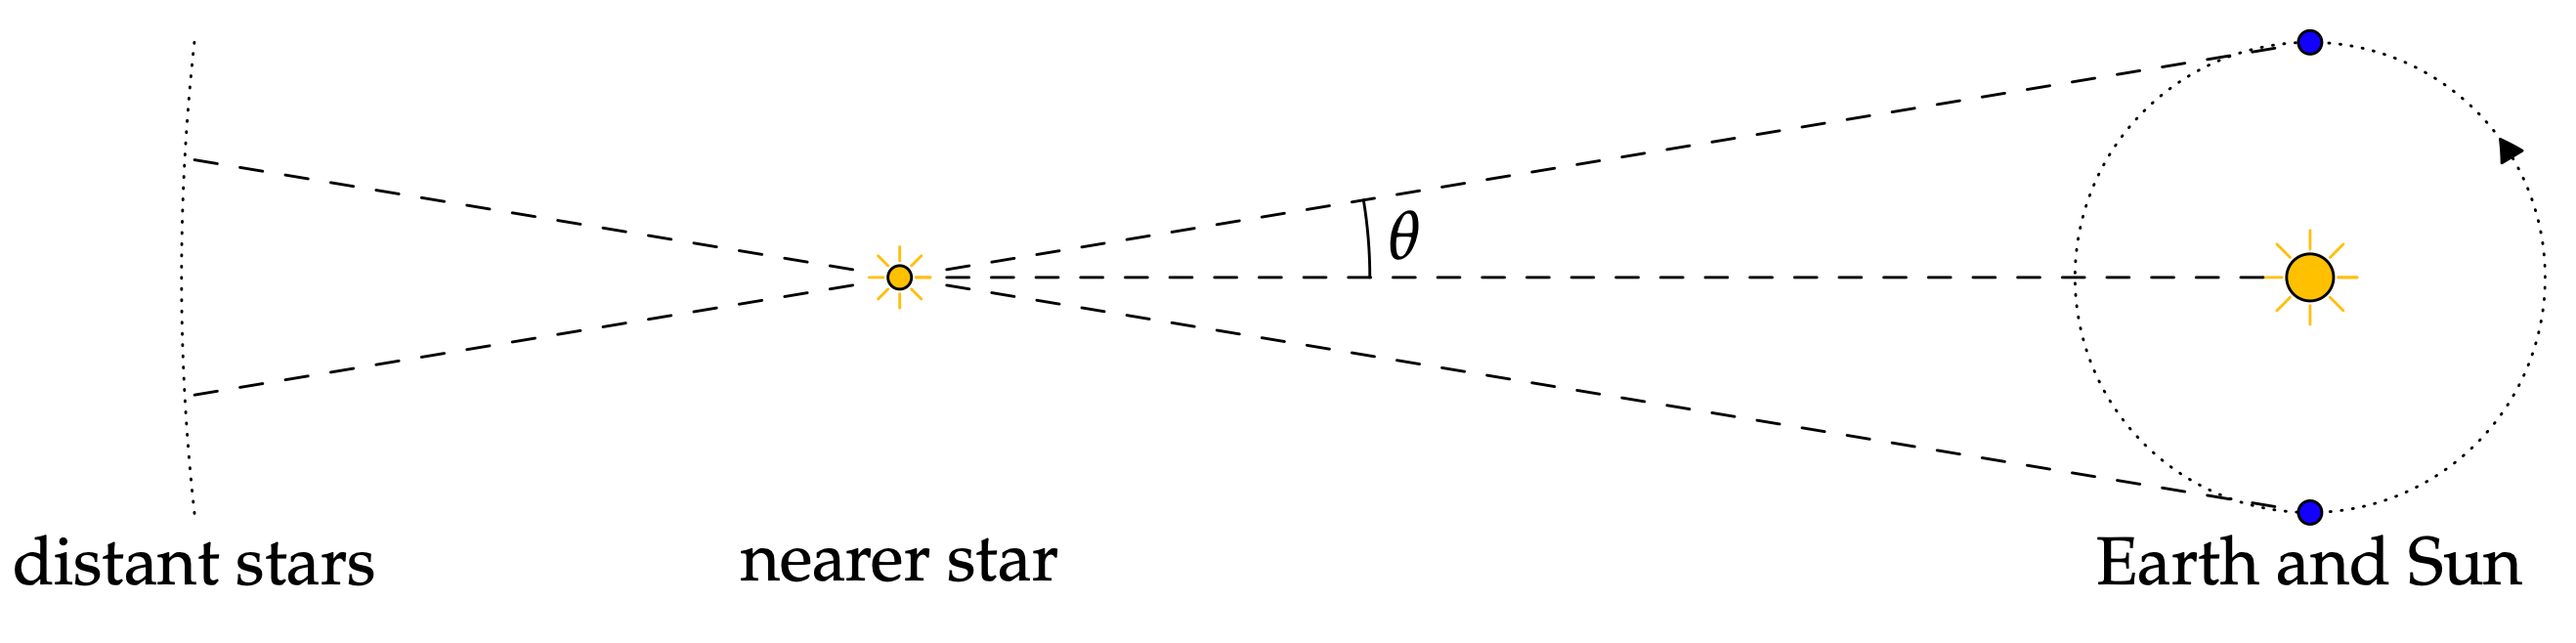 astronomi örneği - www.math.uci.edu'dan görüntü